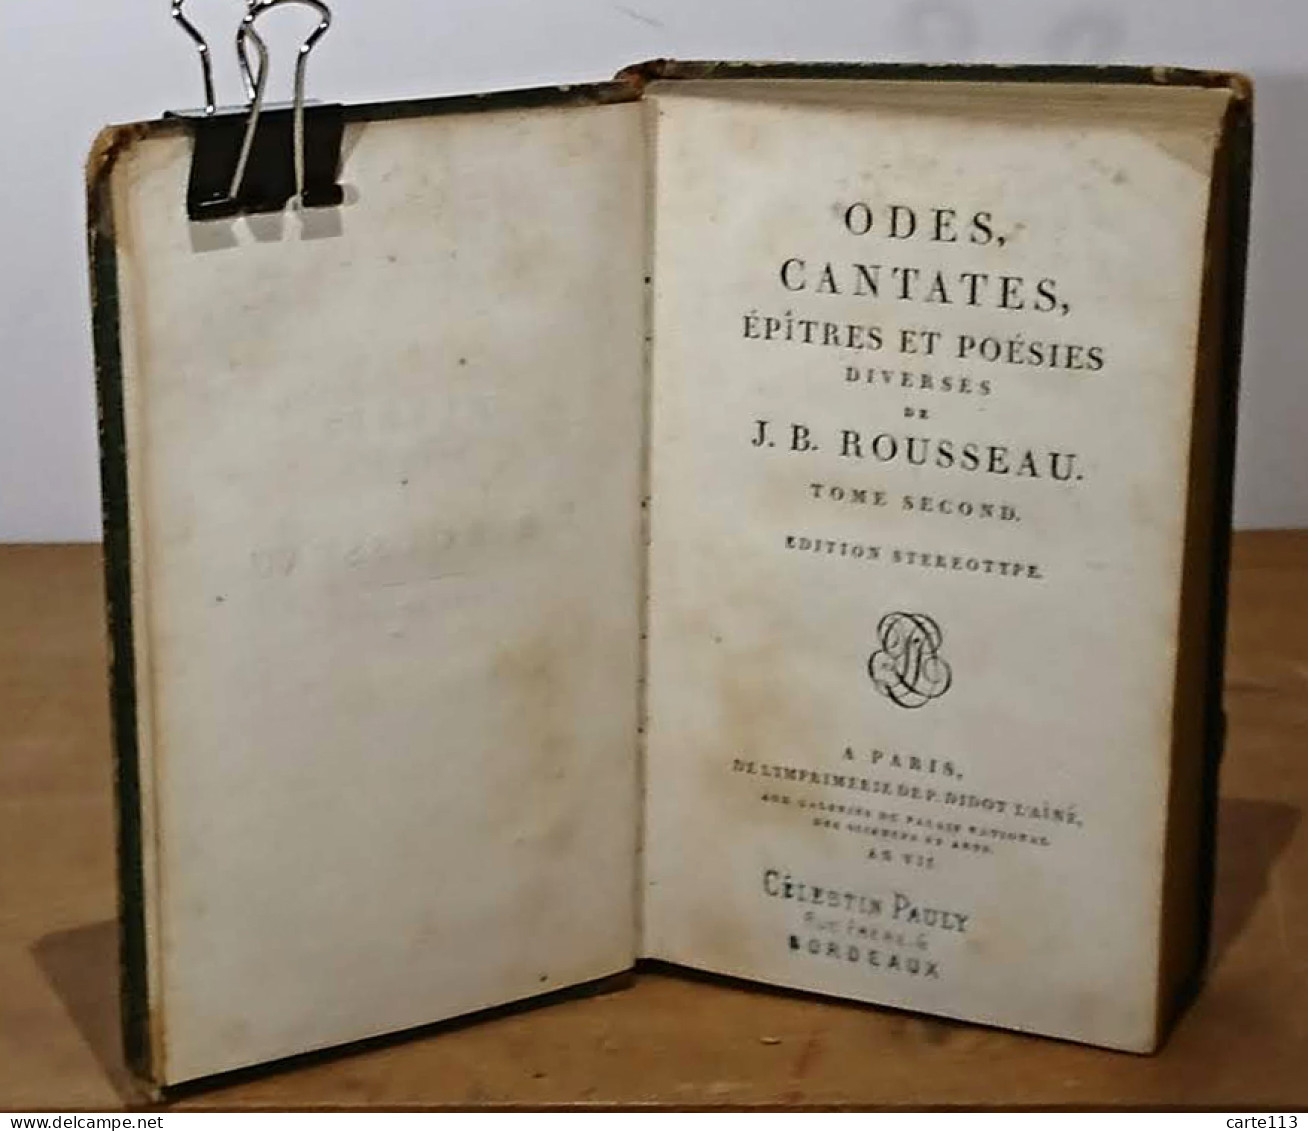 ROUSSEAU Jean-Baptiste - ODES, CANTATES, EPITRES ET POESIES DIVERSES - TOME 2 - 1701-1800